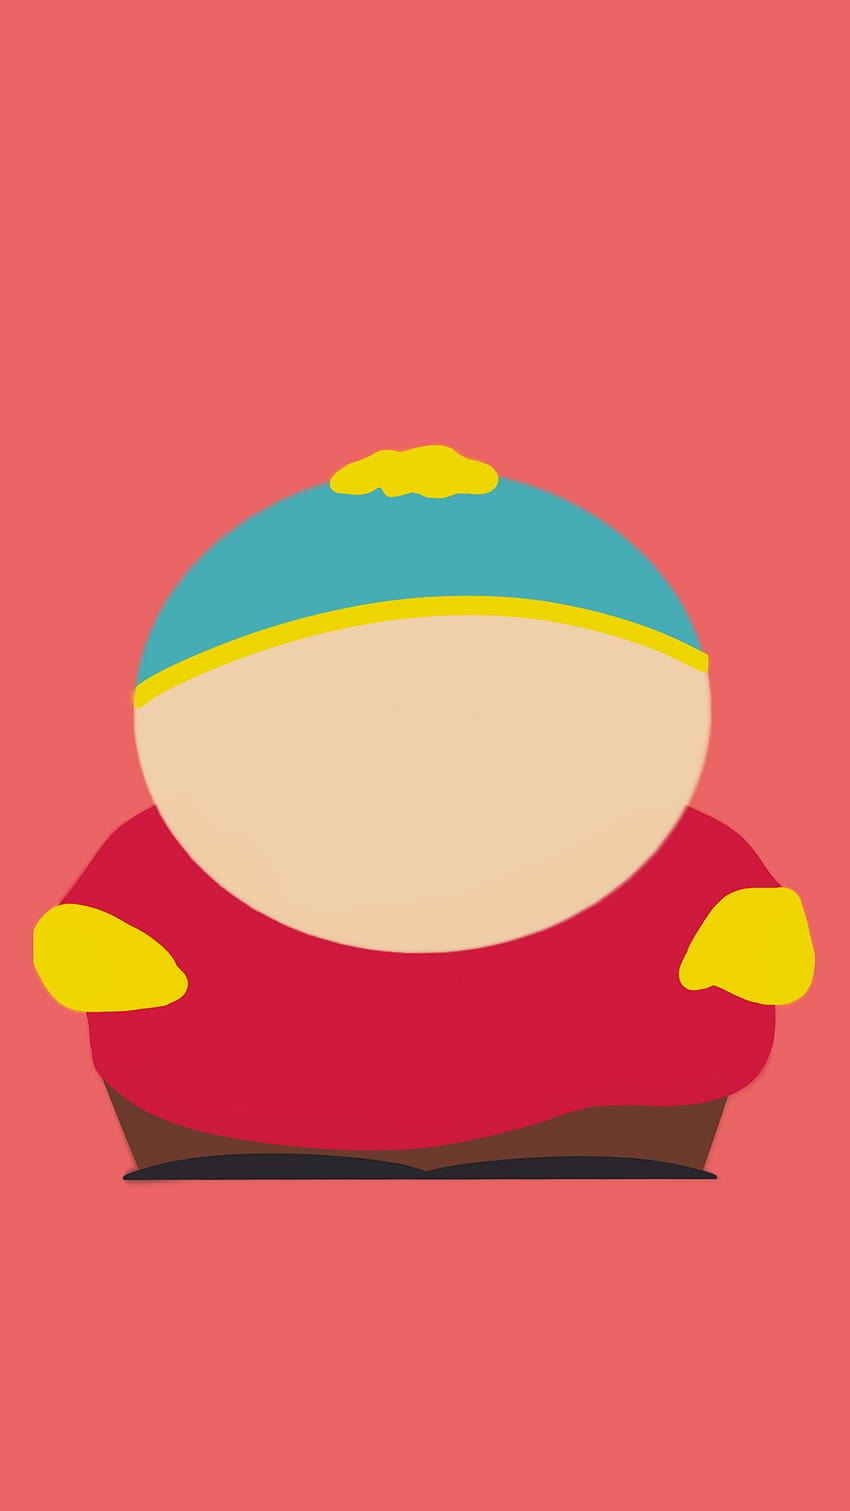 Cartman on Dog, eric cartman iphone HD phone wallpaper